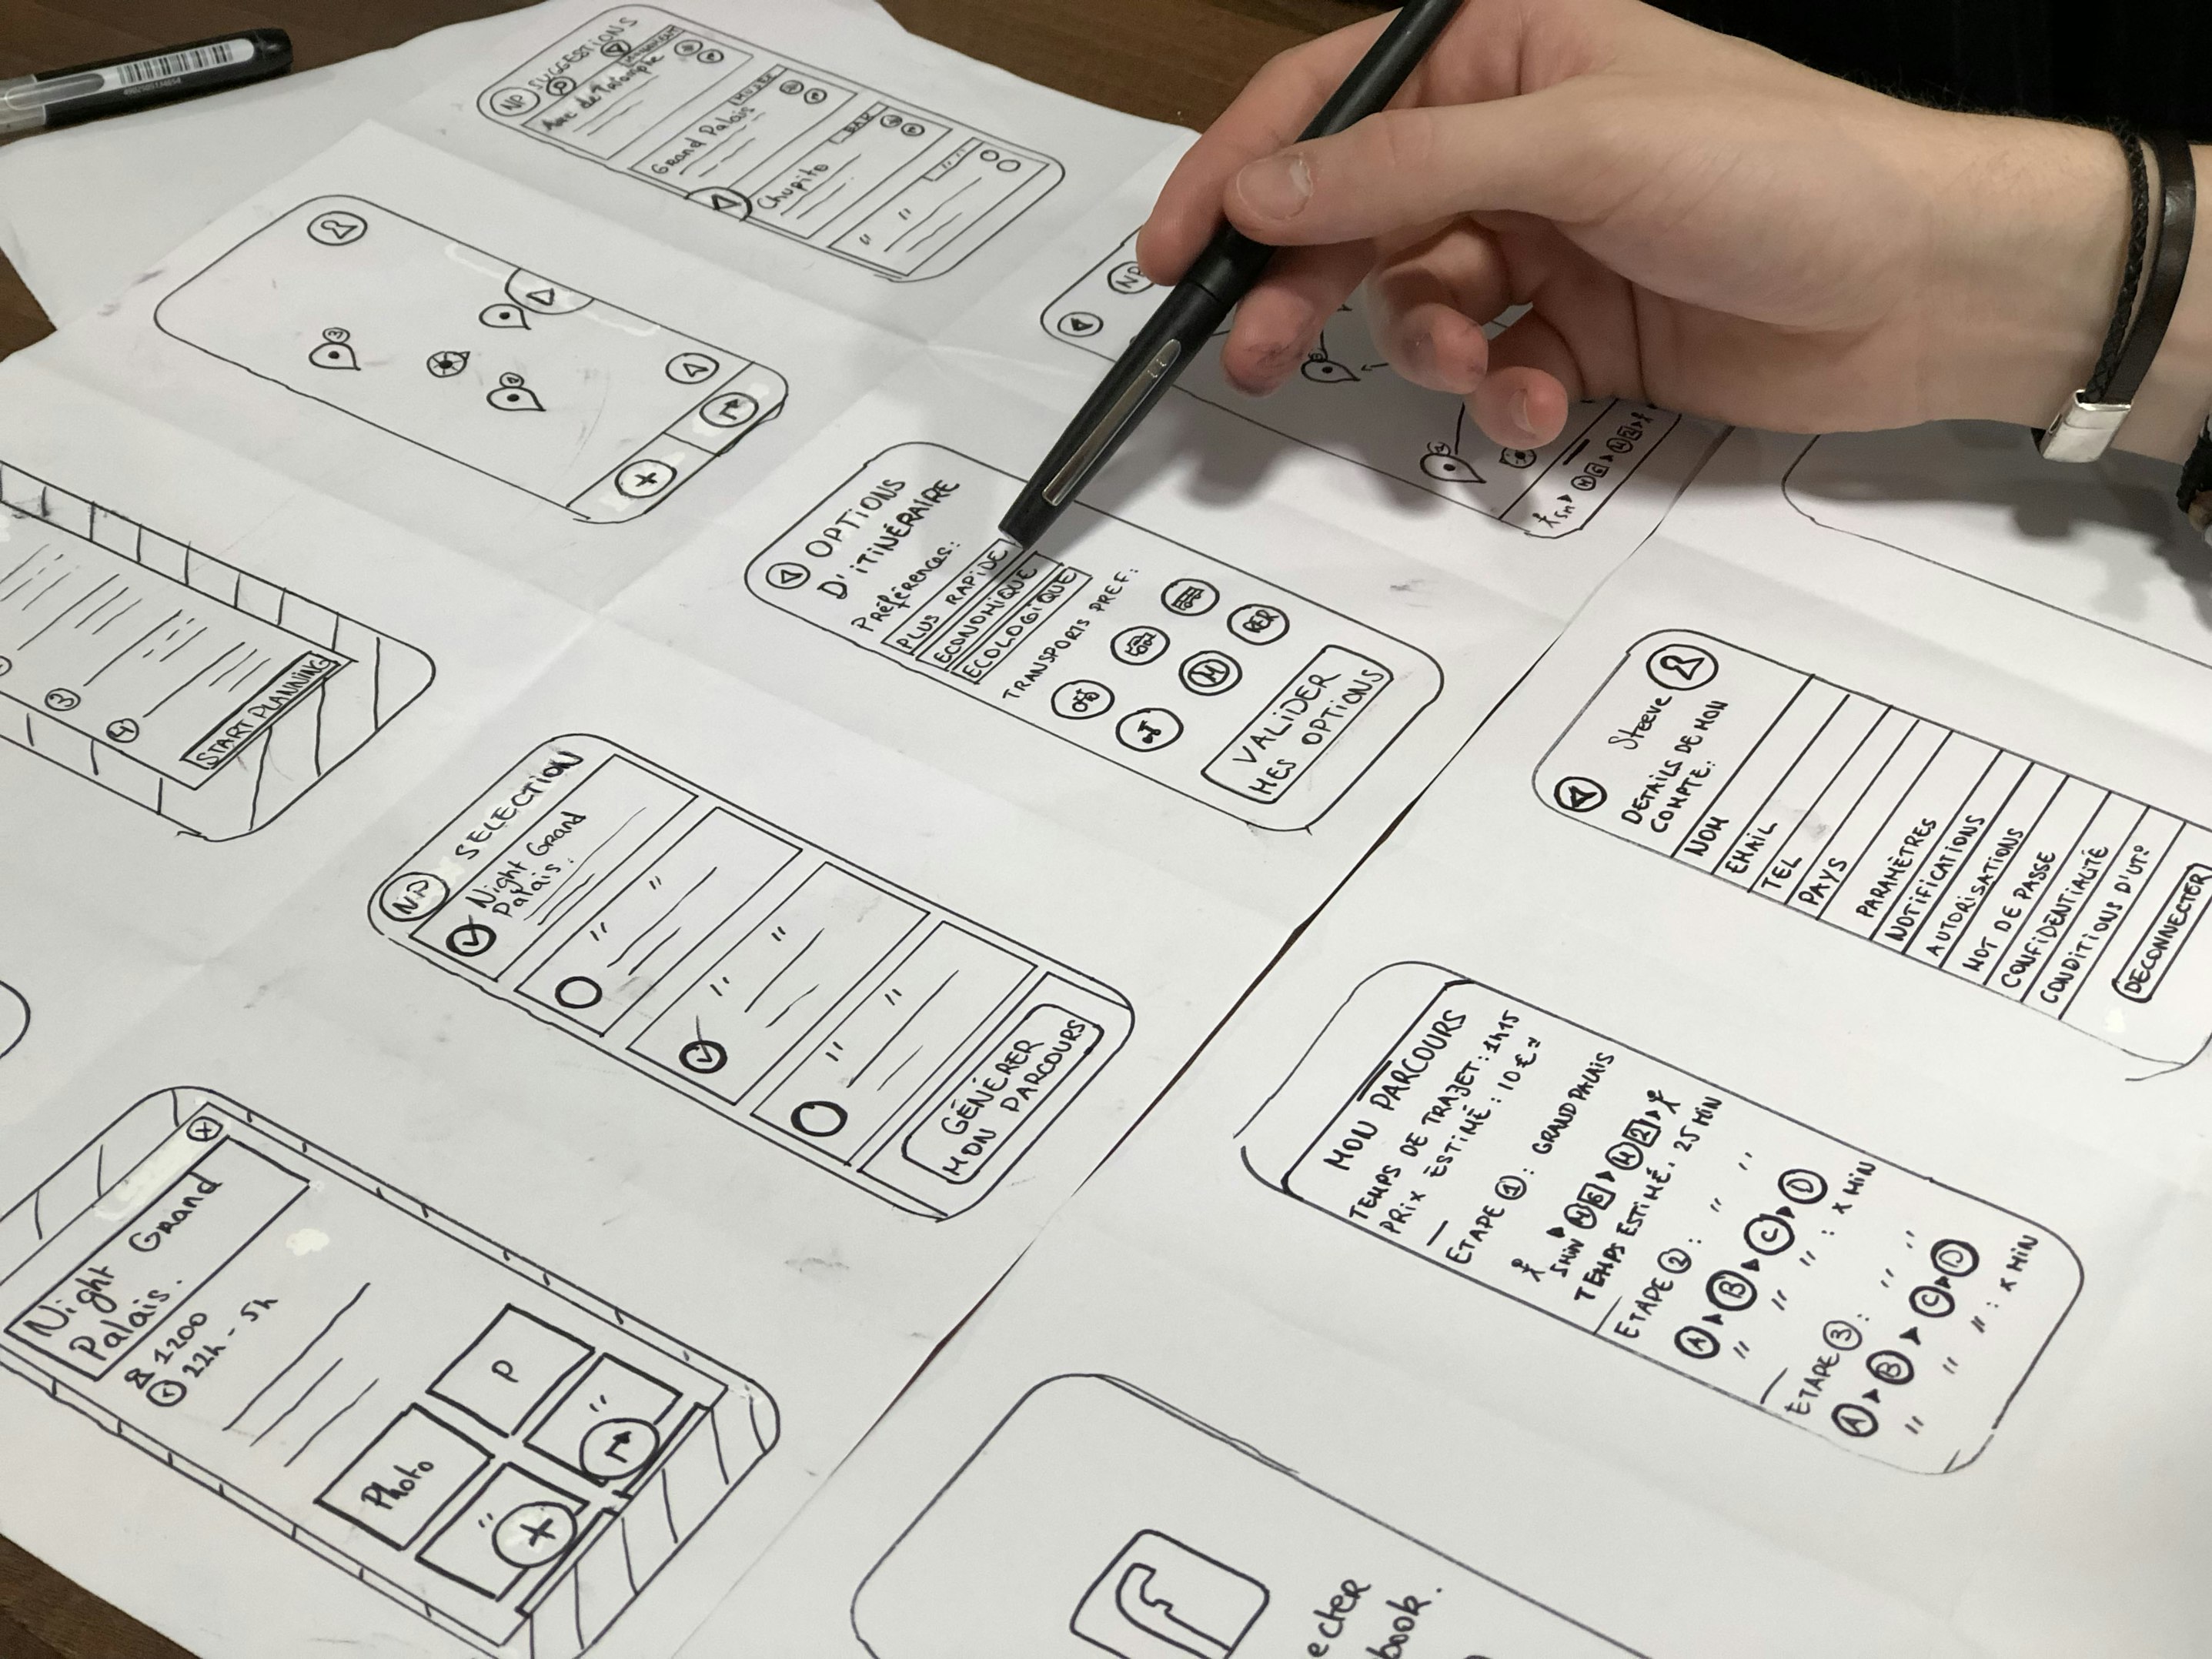 UX Designer designing a layout on paper